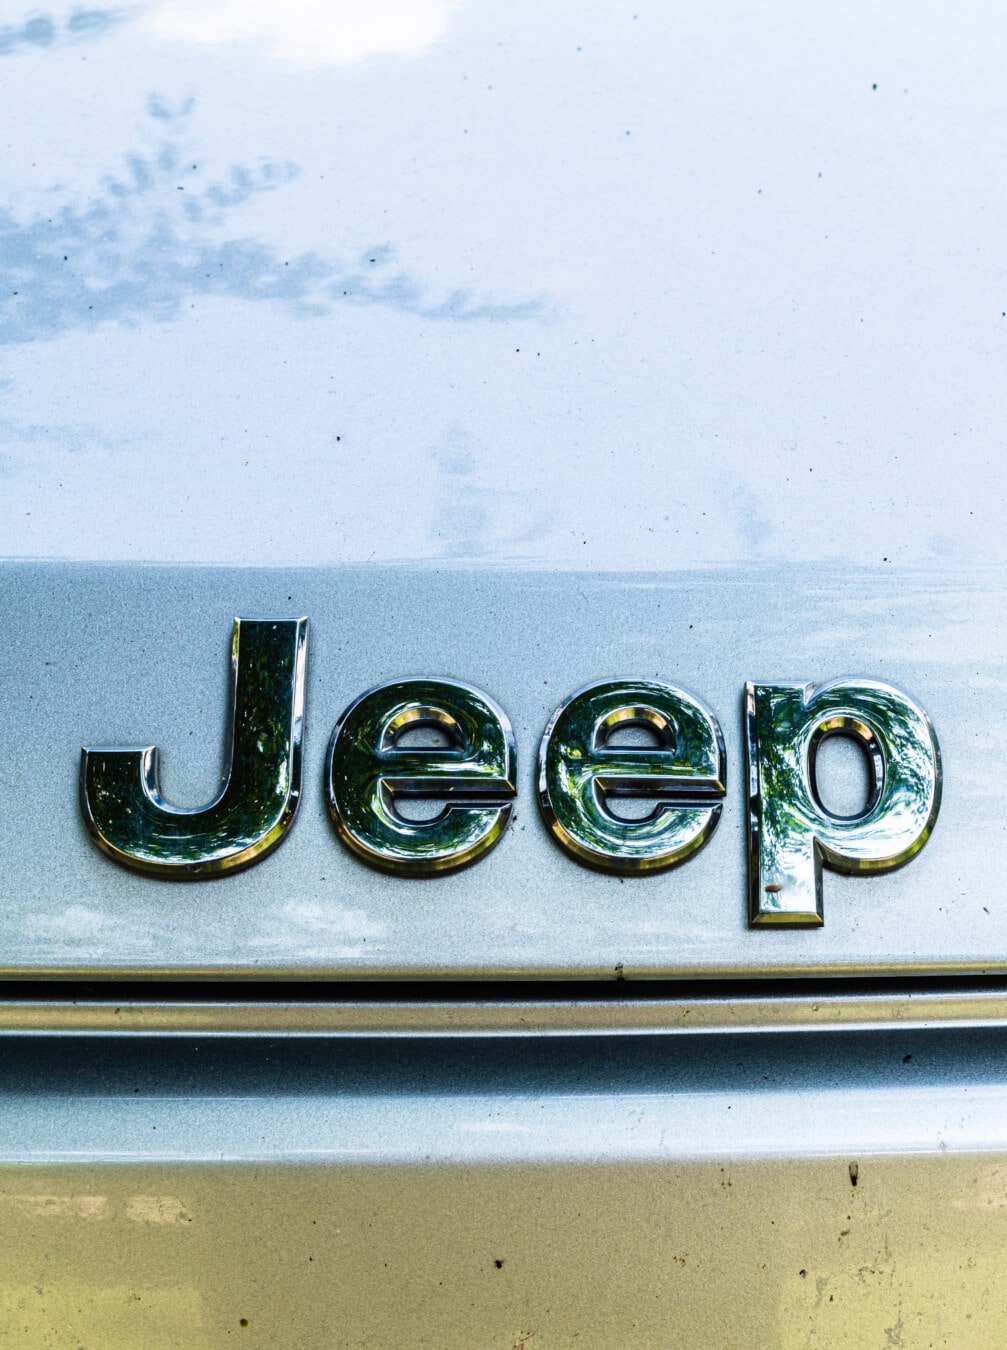 Jeep, bil, bil, symbolet, tegn, metallisk, refleksjon, krom, tekst, årgang